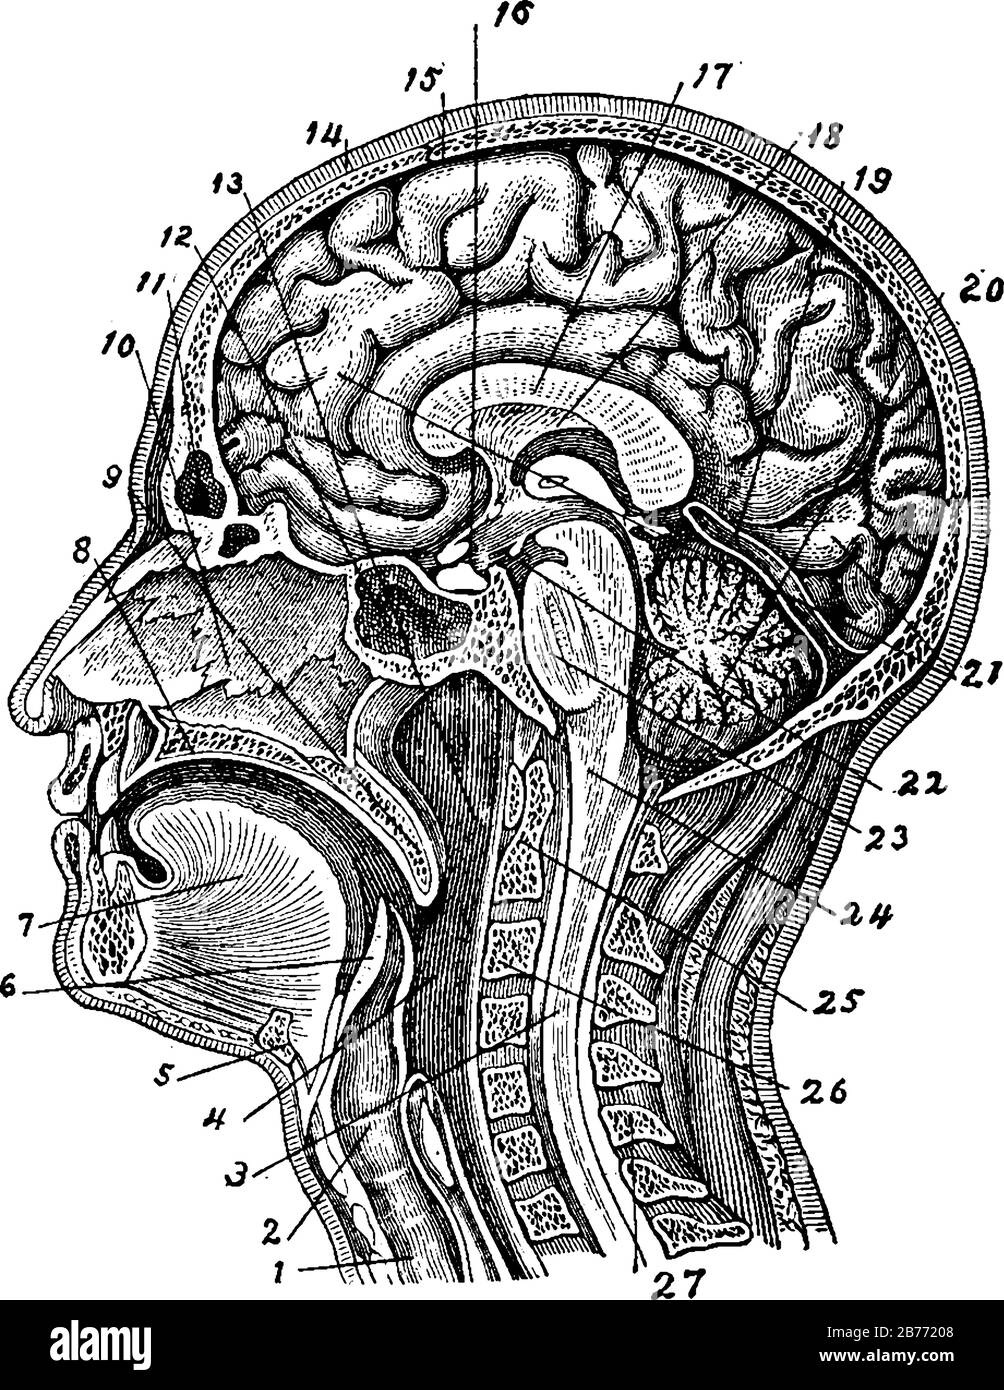 La structure interne de la tête et du cou humains, qui se compose d'organes principaux tels que le cerveau, les muscles du cou, la mandibule, les vertèbres spinales et la cavité nasale, v Illustration de Vecteur